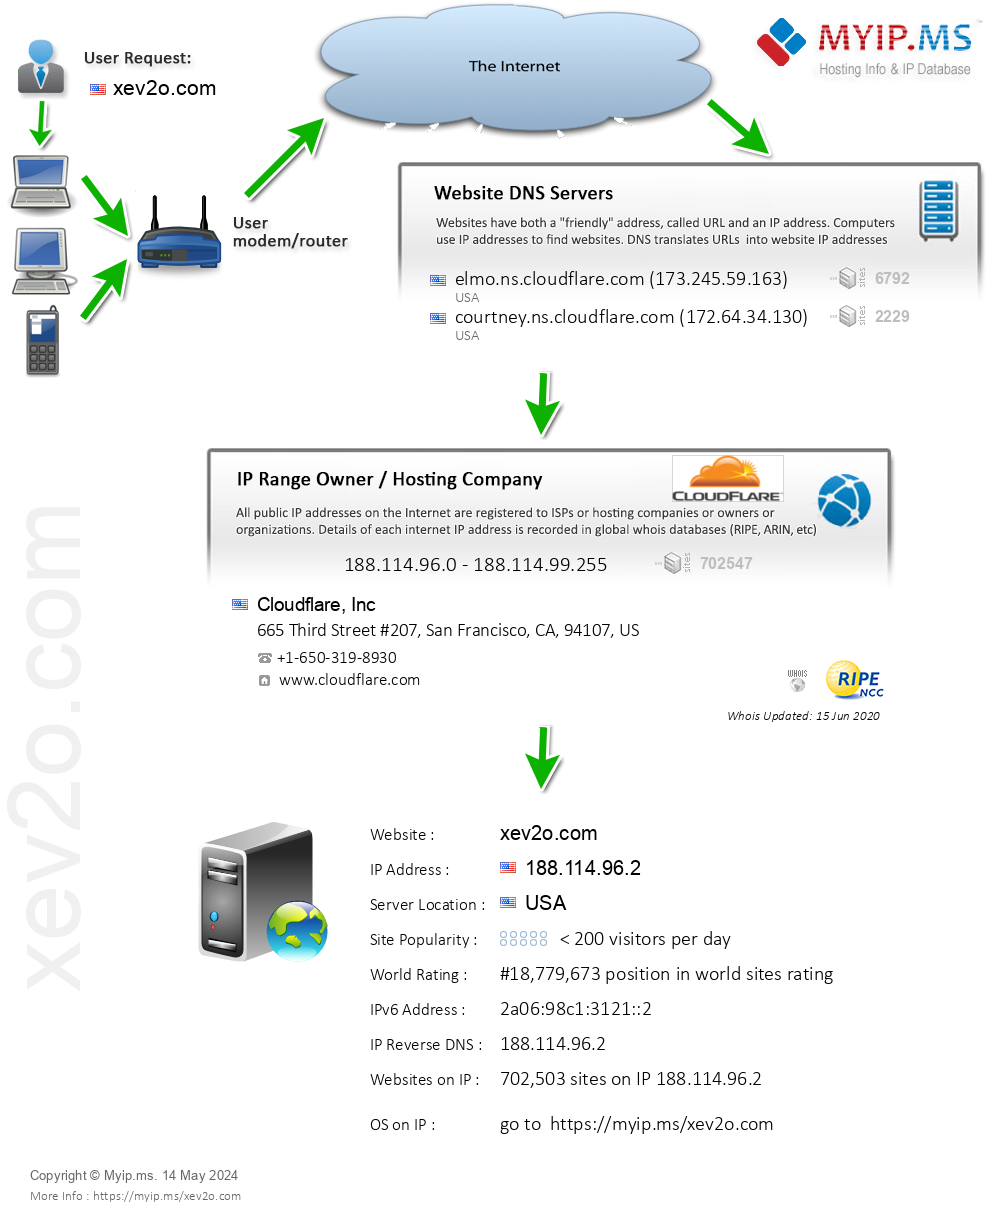 Xev2o.com - Website Hosting Visual IP Diagram